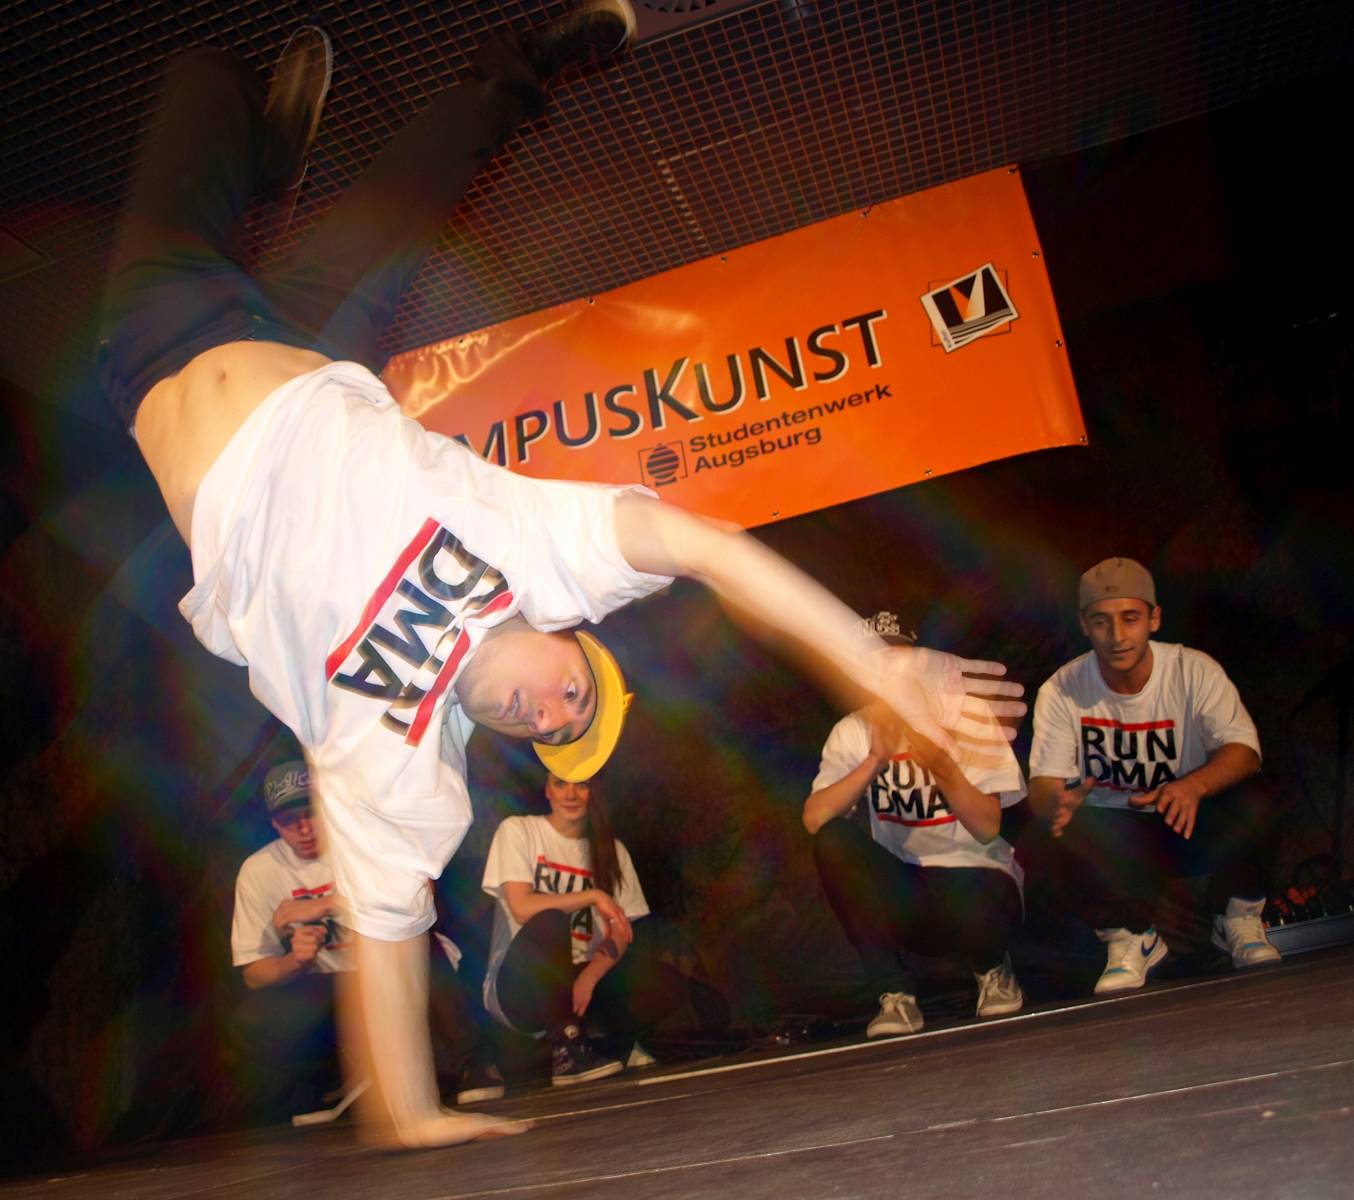 Eine Breakdancer-Gruppe beim Auftritt, alle in "RUN DMA" T-Shirts. Einer der Tänzer steht gerade nur auf einer Hand, die anderen schauen konzentriert zu.